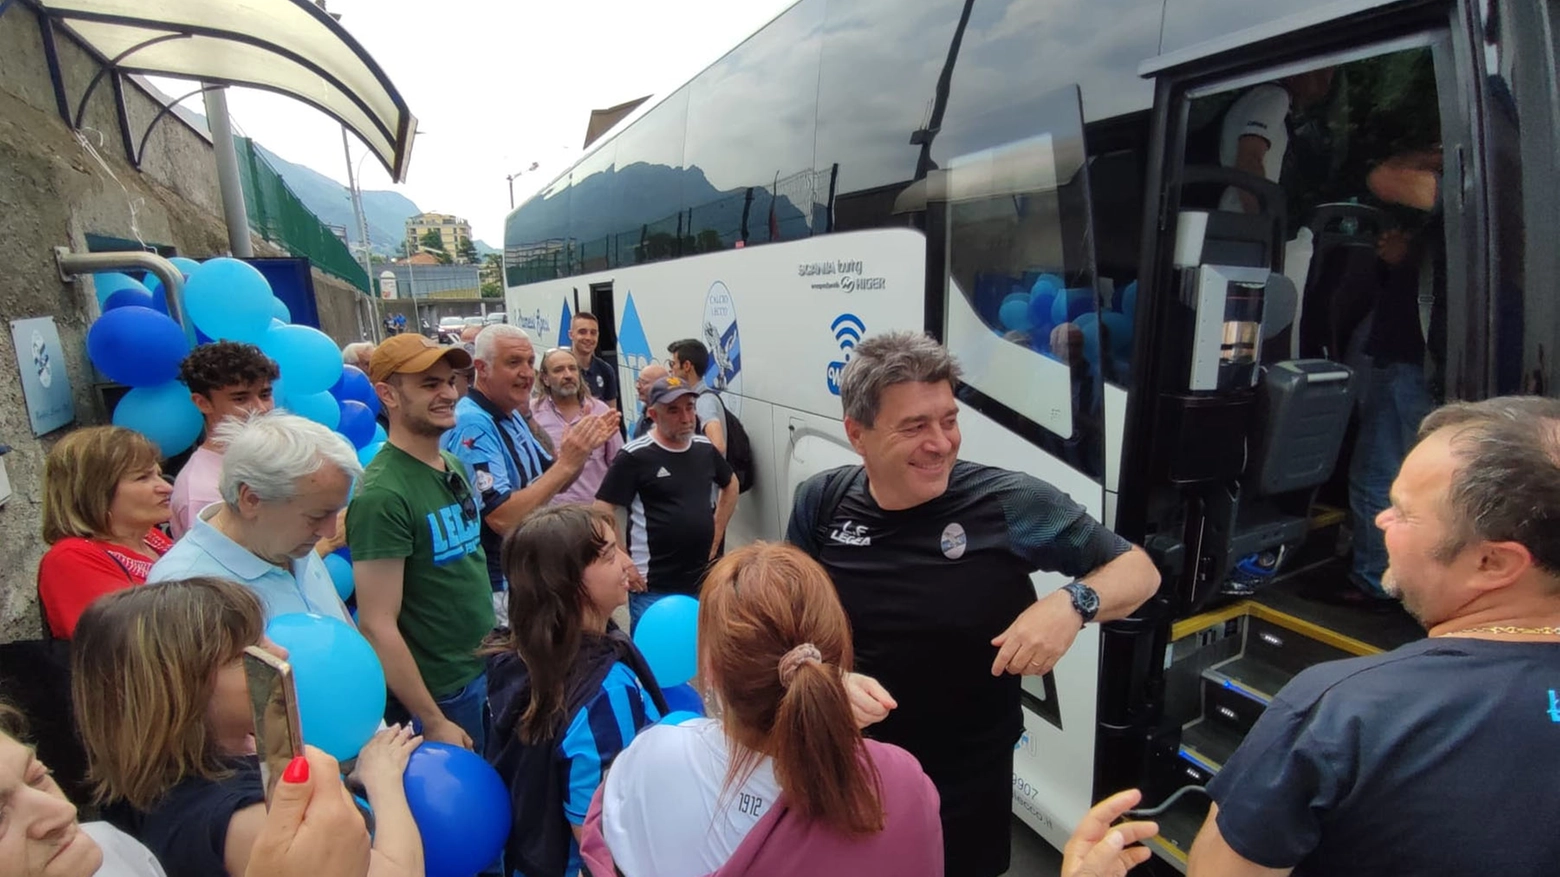 L'allenatore Luciano Foschi accolto dall'affetto dei tifosi blucelesti allo stadio